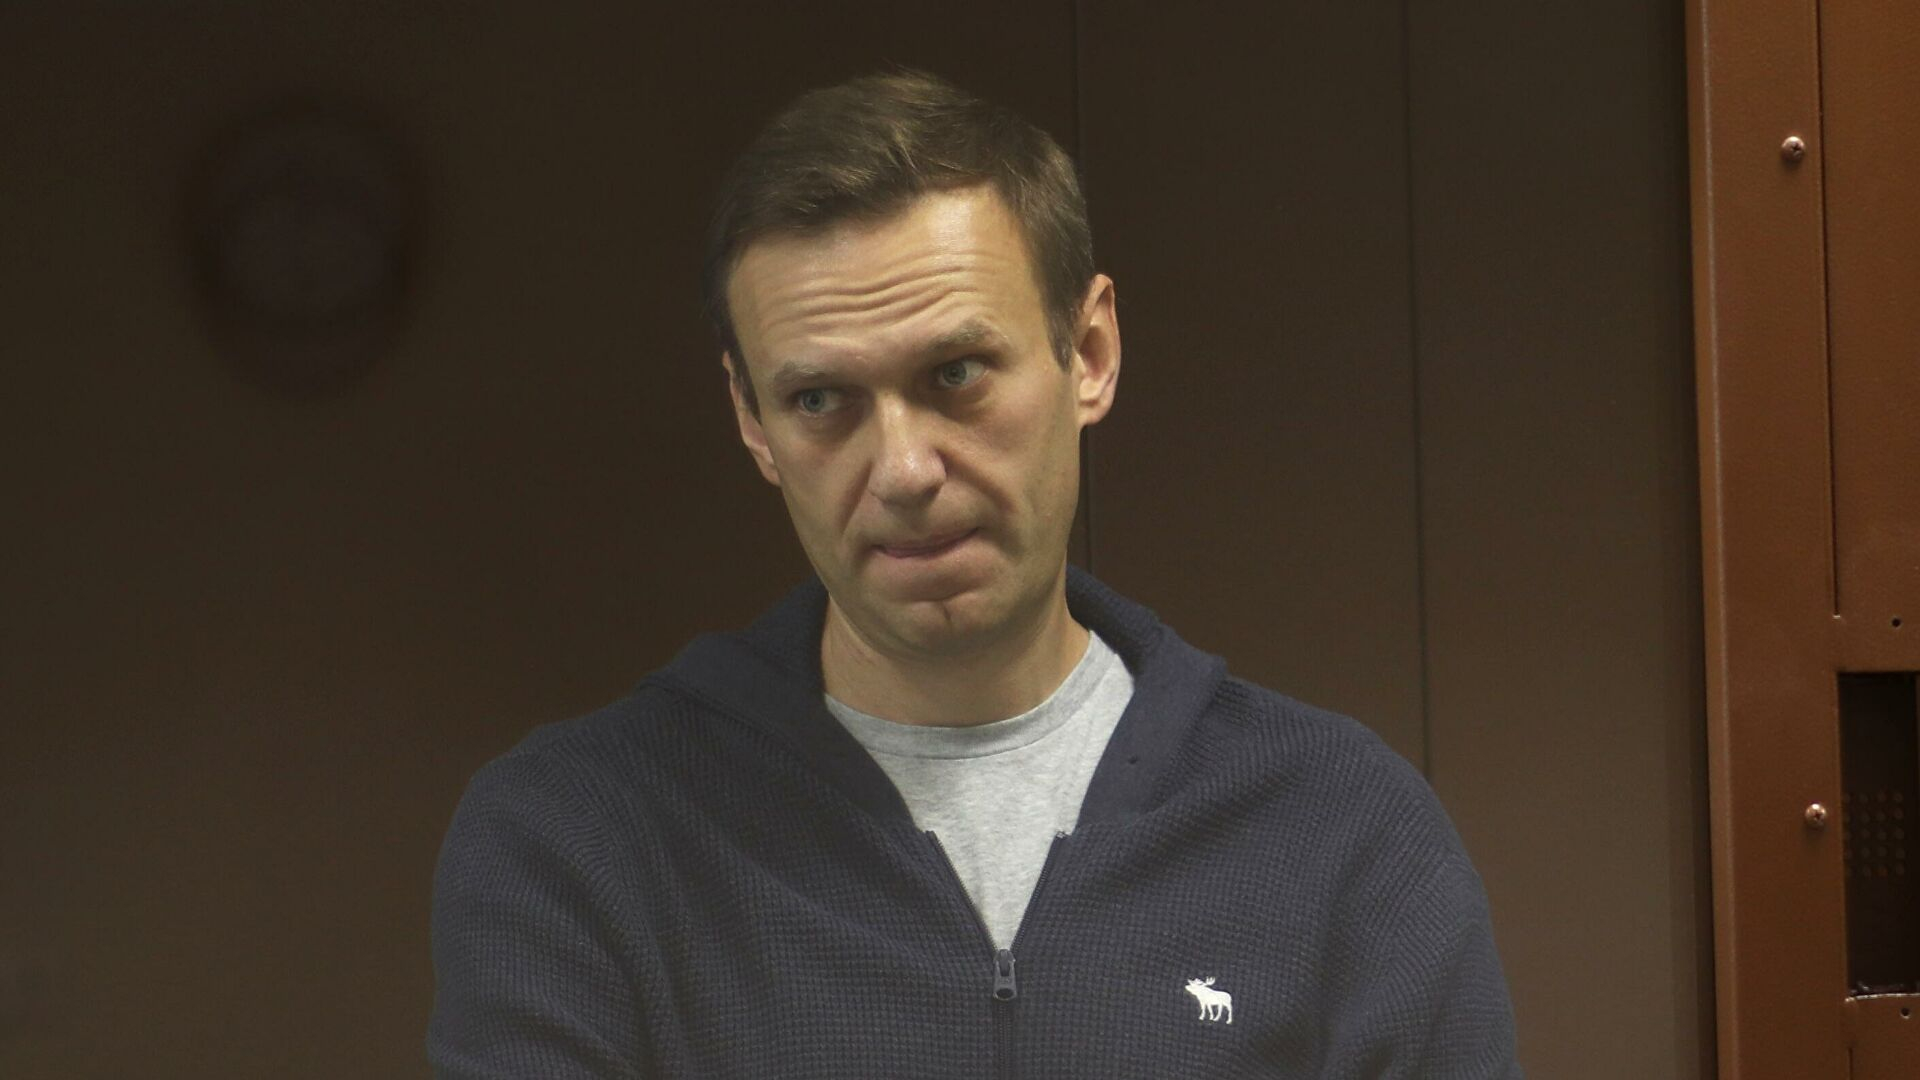 ЕСПЧ потребовал у правительства РФ немедленно отпустить Навального